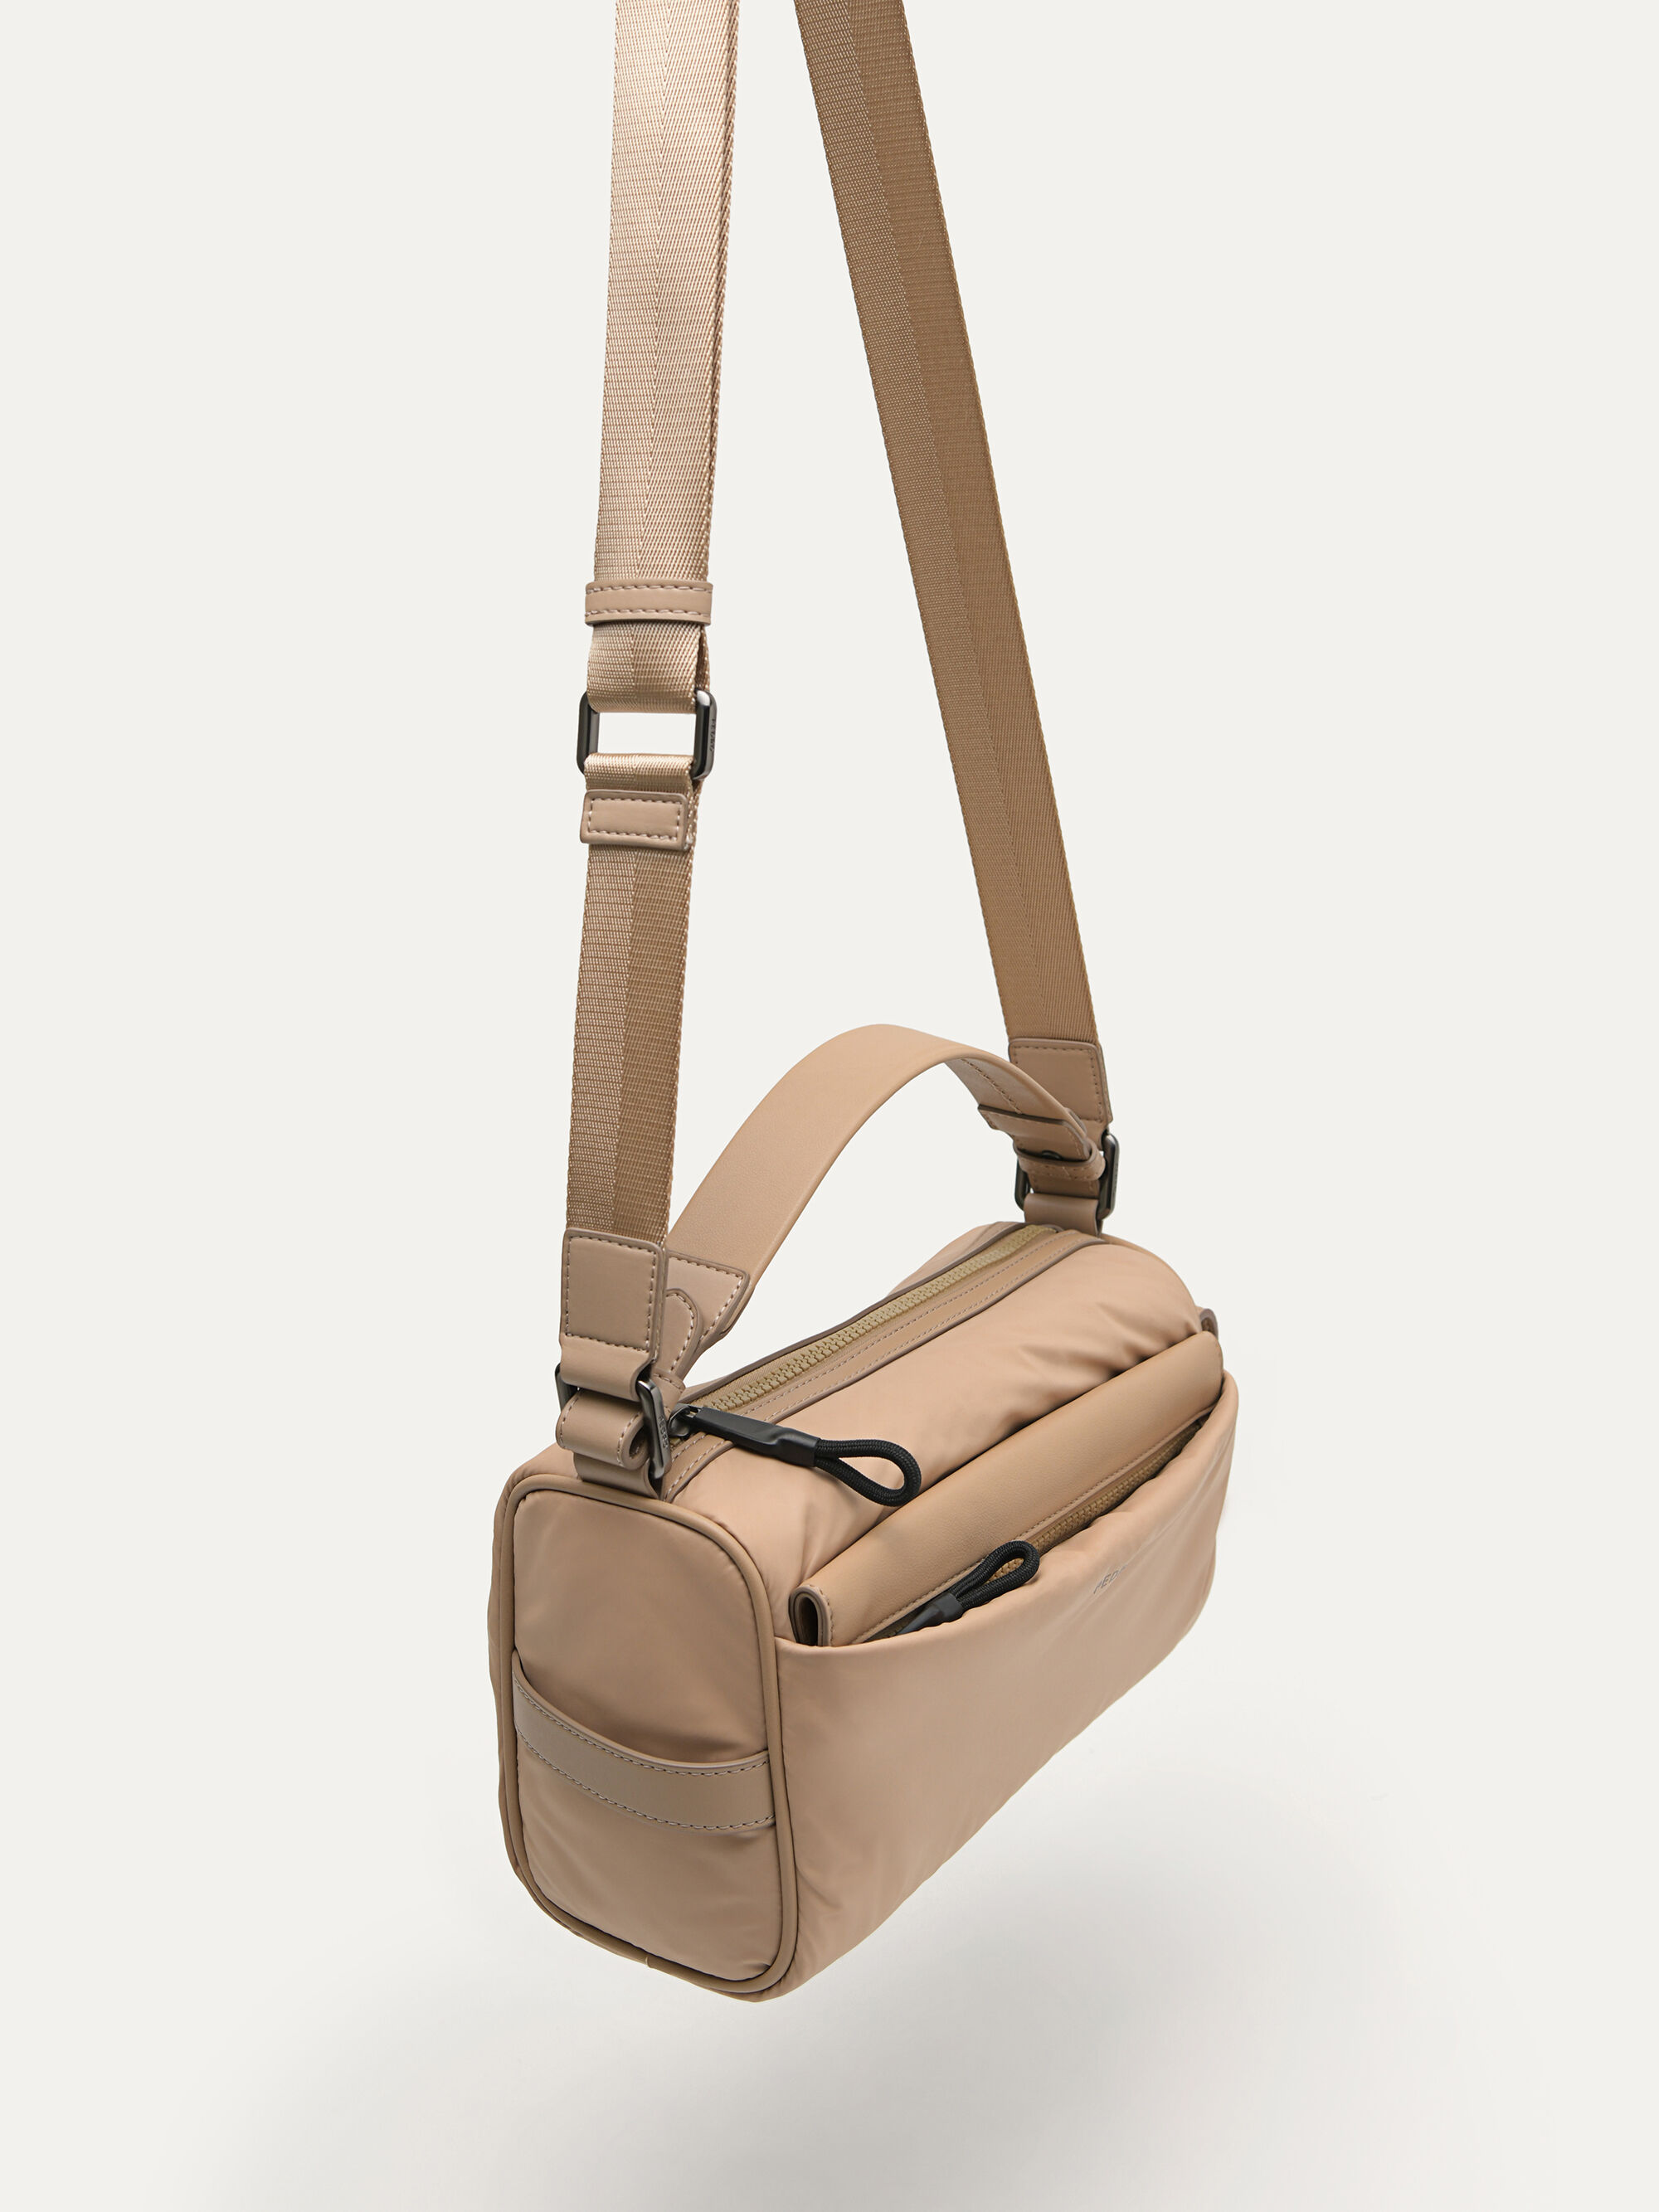 Pedro Five Pocket Carry All Leather Messenger Bag – Tasker & Shaw